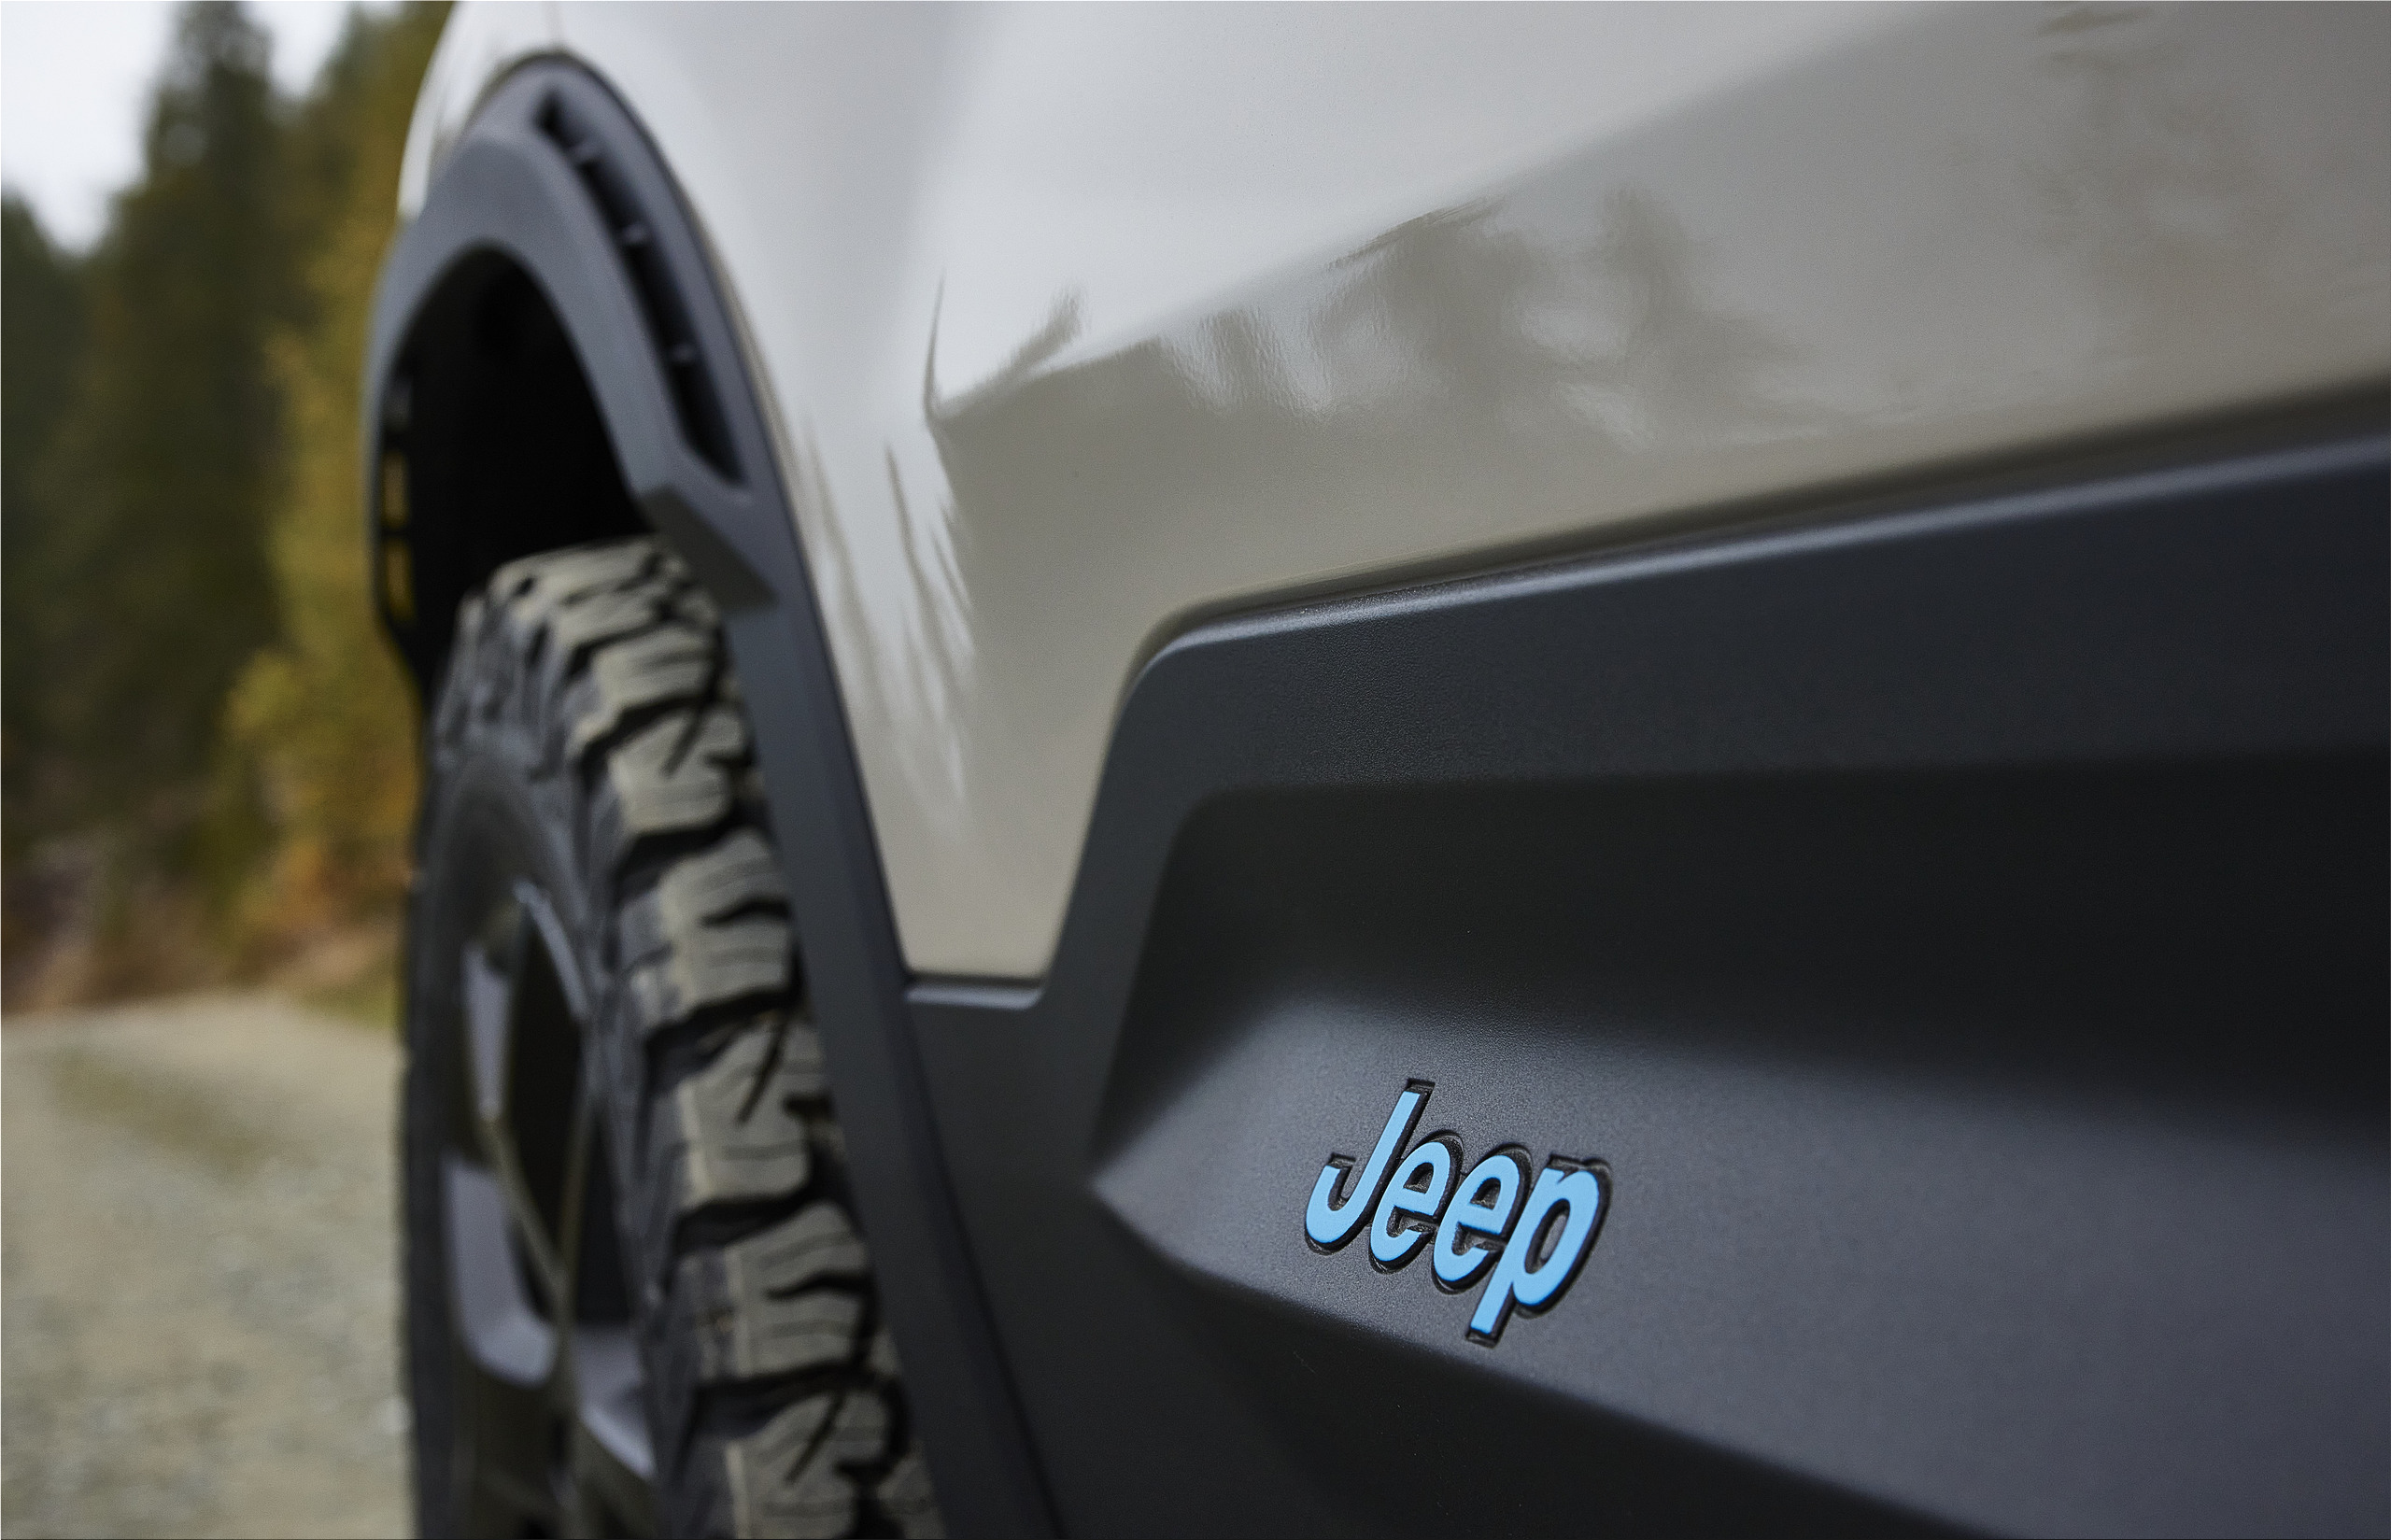 2022 Paris auto show: Jeep Avenger gets all-wheel drive